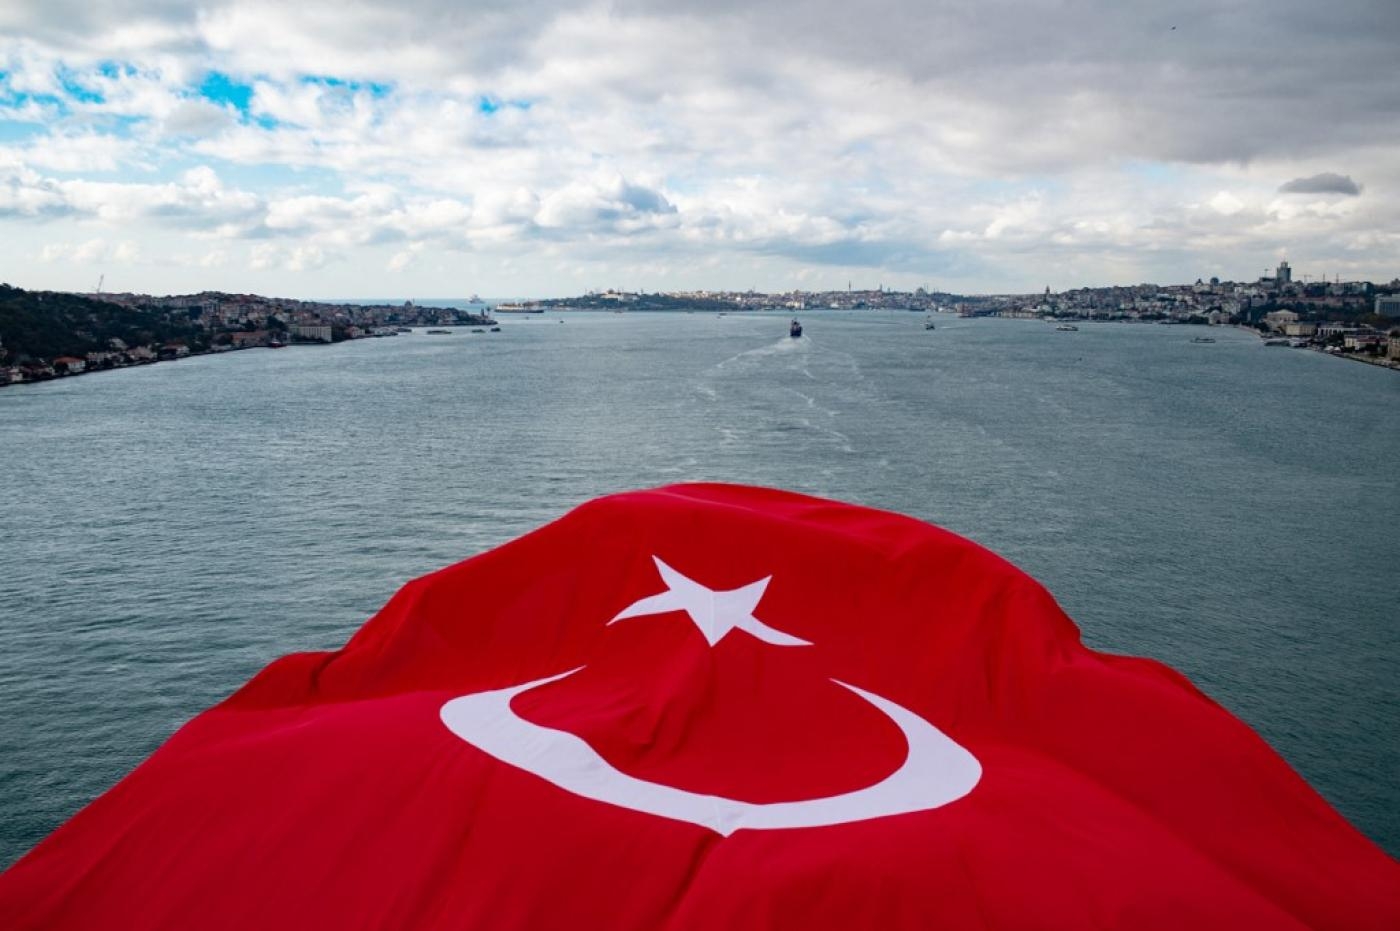 Le drapeau national turc flotte sur le pont des Martyrs du 15 juillet, connu sous le nom de pont du Bosphore, lors du 42e marathon d’Istanbul, le 8 novembre 2020 (AFP)